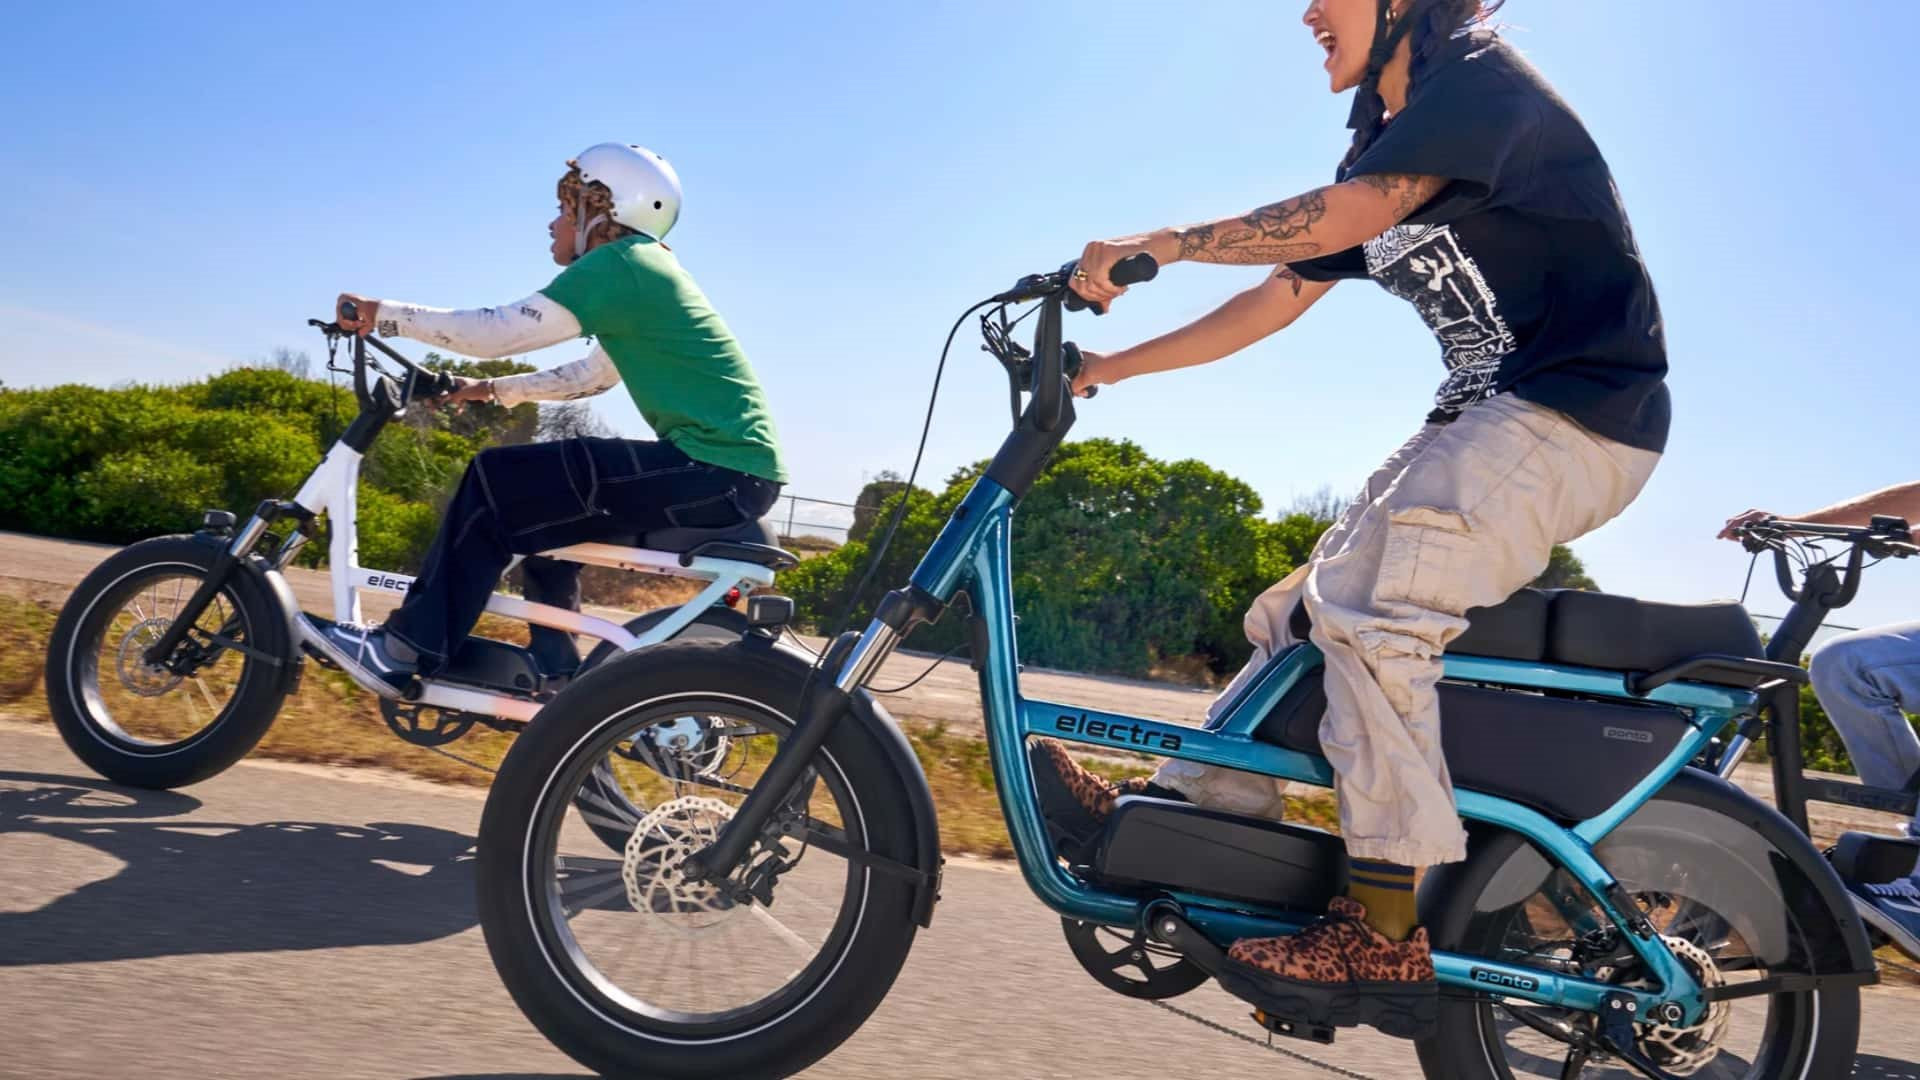 VinFast giới thiệu xe đạp điện đầu tiên tại xứ cờ hoa: 'Mỏ vàng' mới của thế giới, doanh số bán hàng của Mỹ tăng gần 400% kể từ năm 2019 - Ảnh 1.